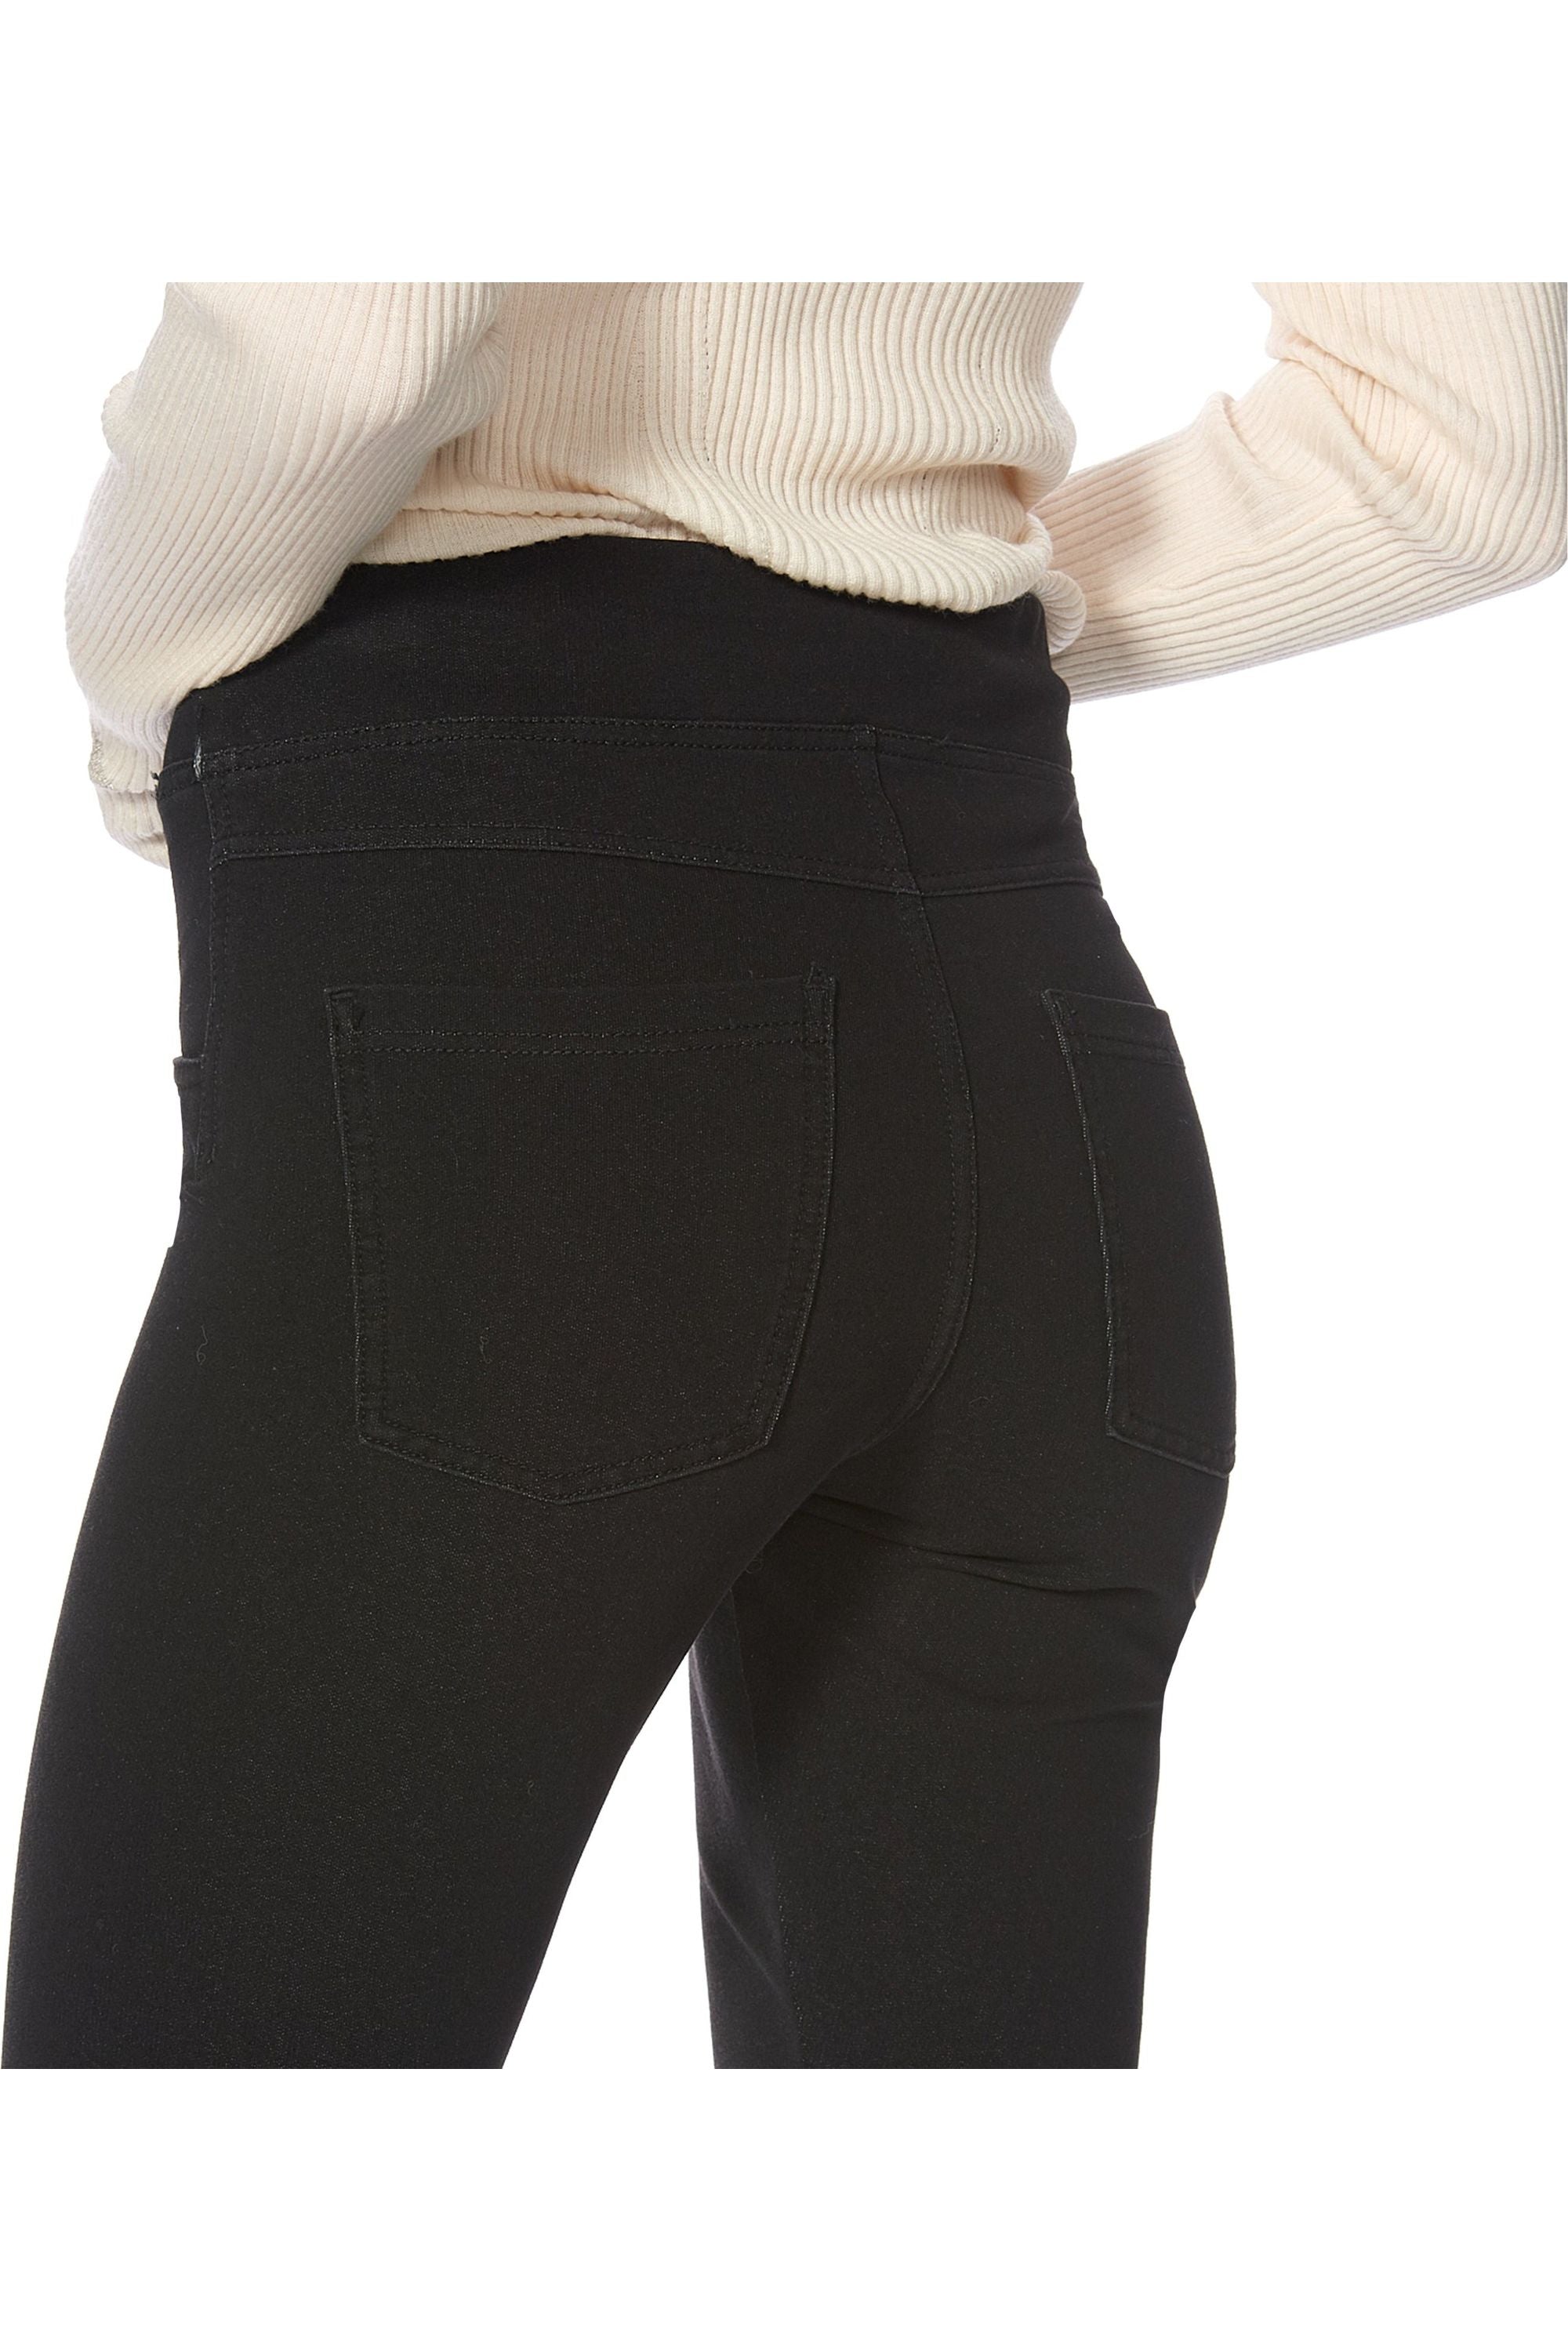 MISM Jeggings for Women Pull-On Denim Printed Skinny Stretch Jean Leggings  (1081-eileen) | Jeans | GOBIZKOREA.COM